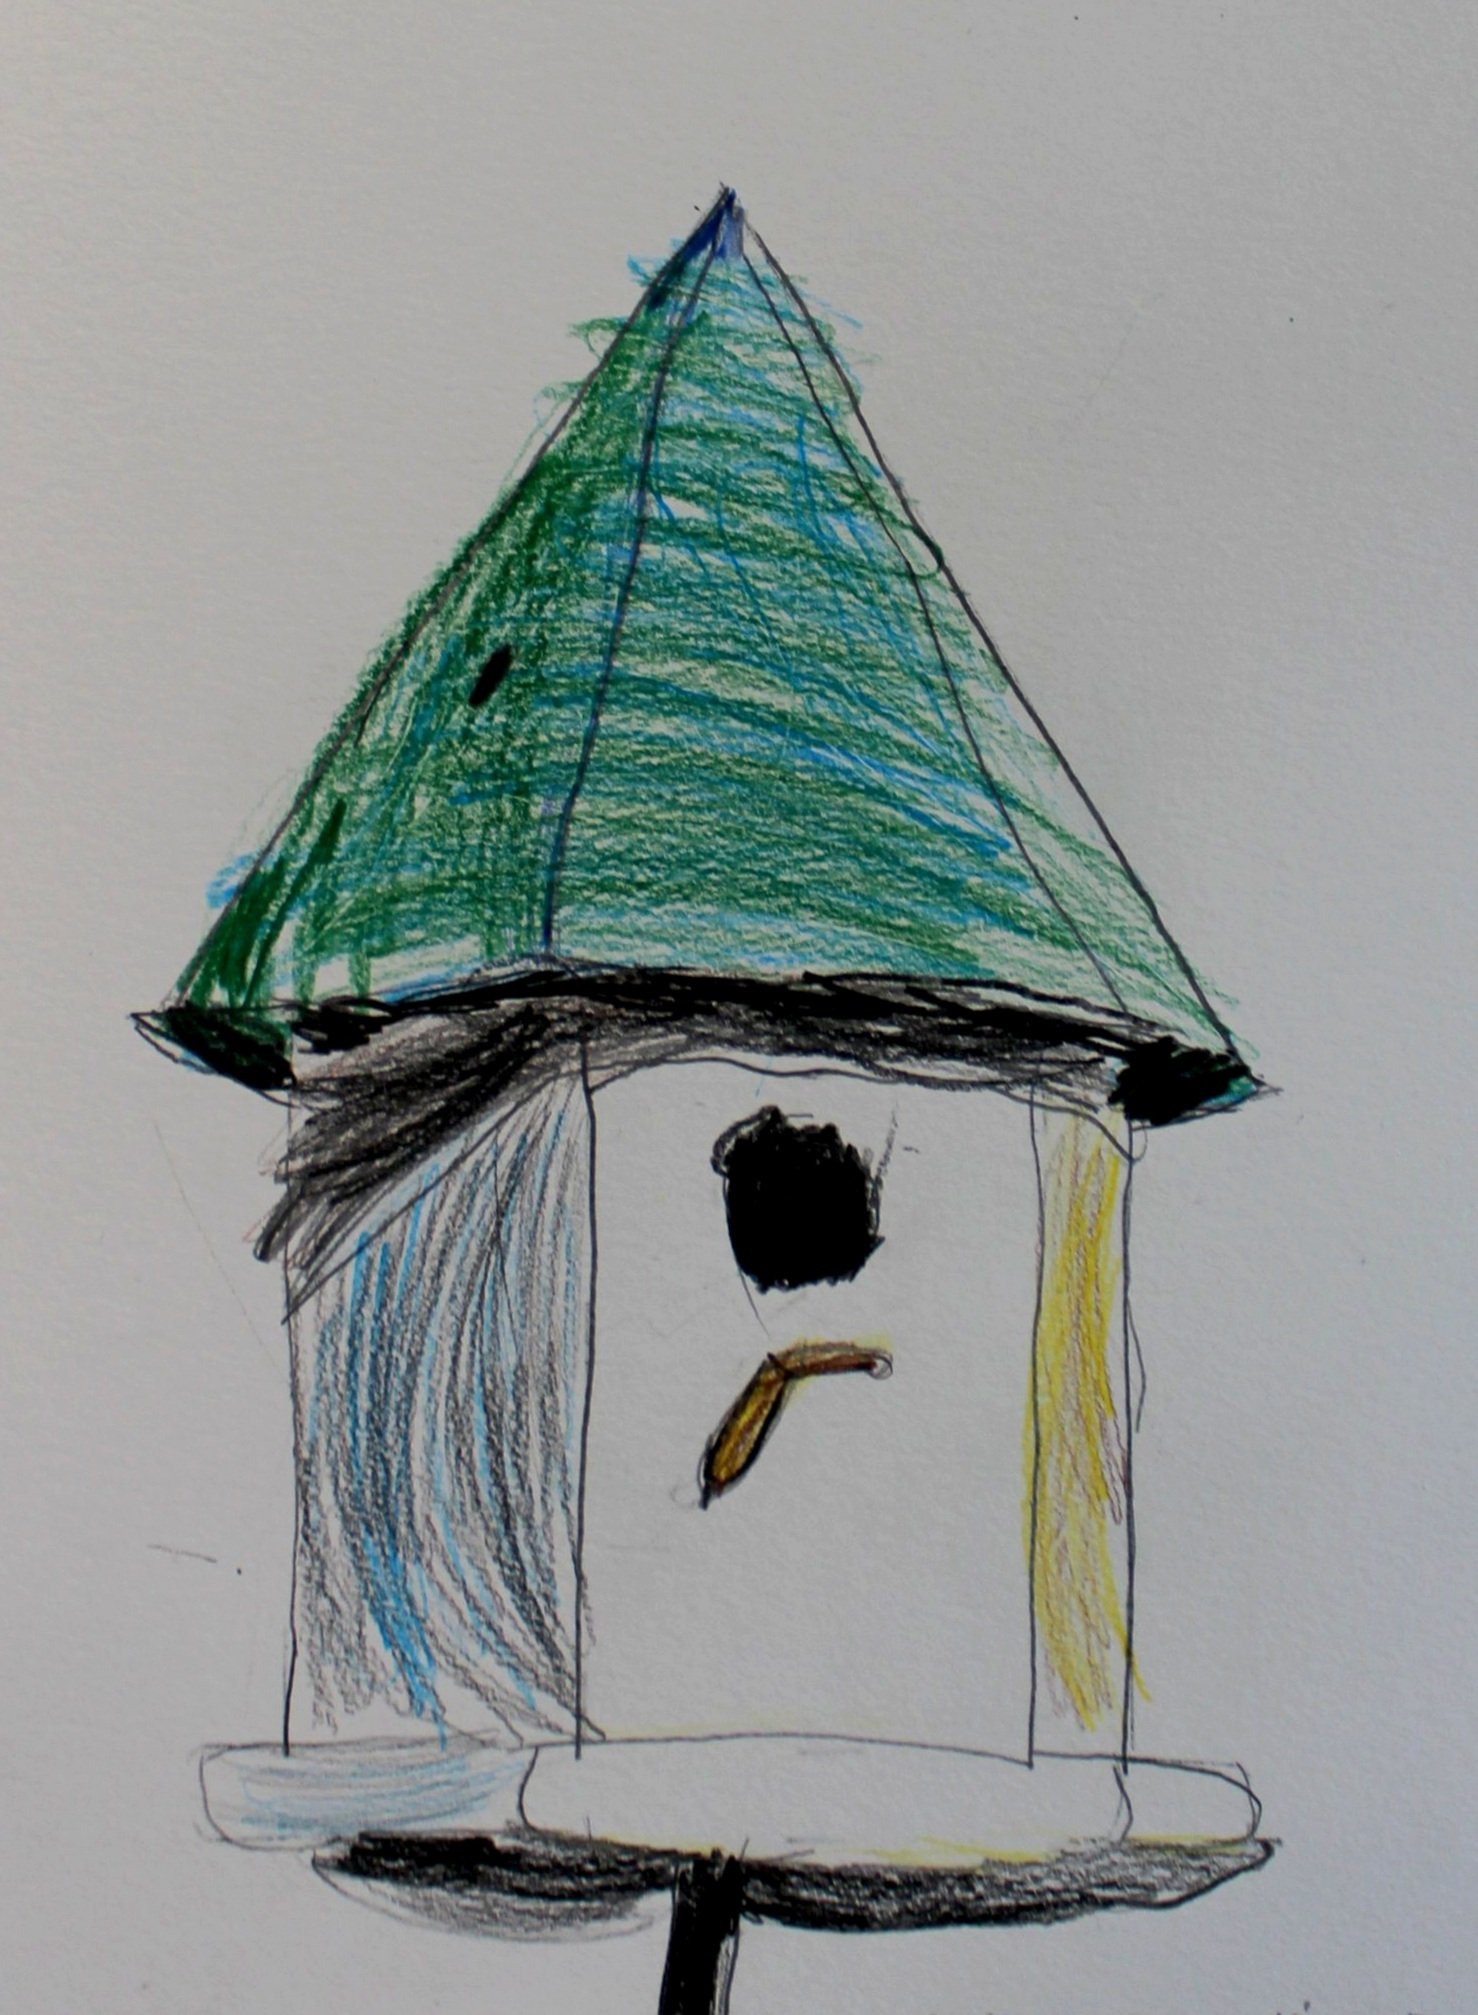 Bridget, age 5, colored pencil